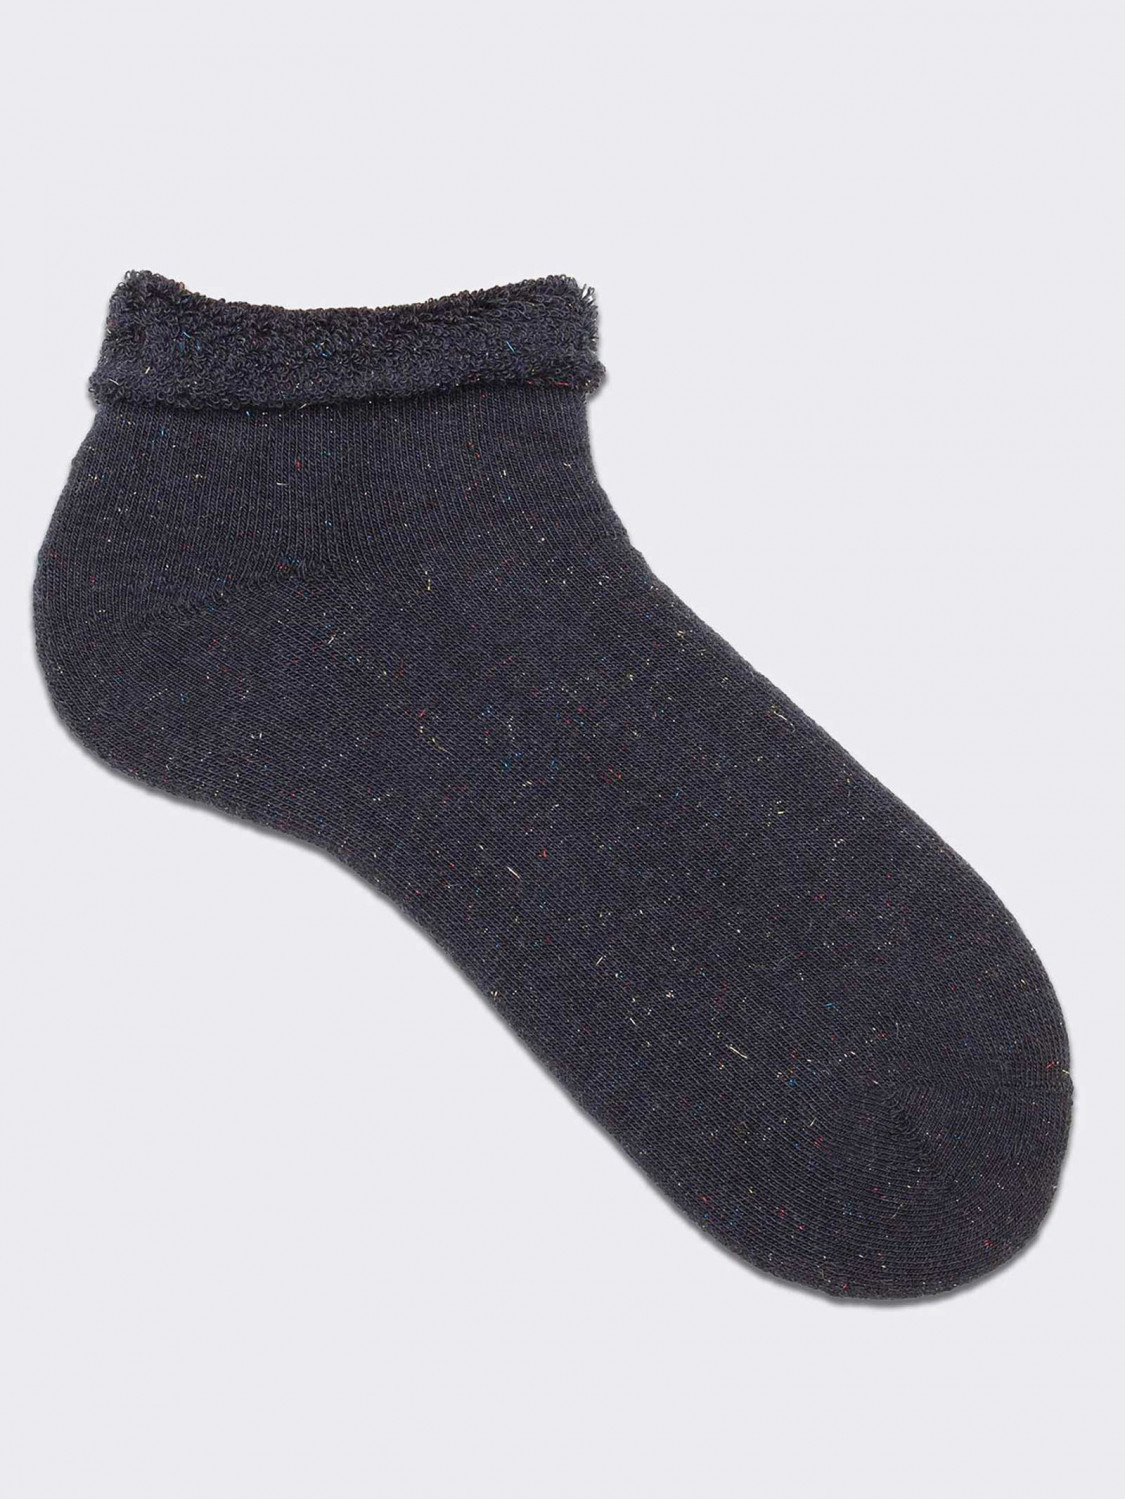 Short socks for woman - homewear